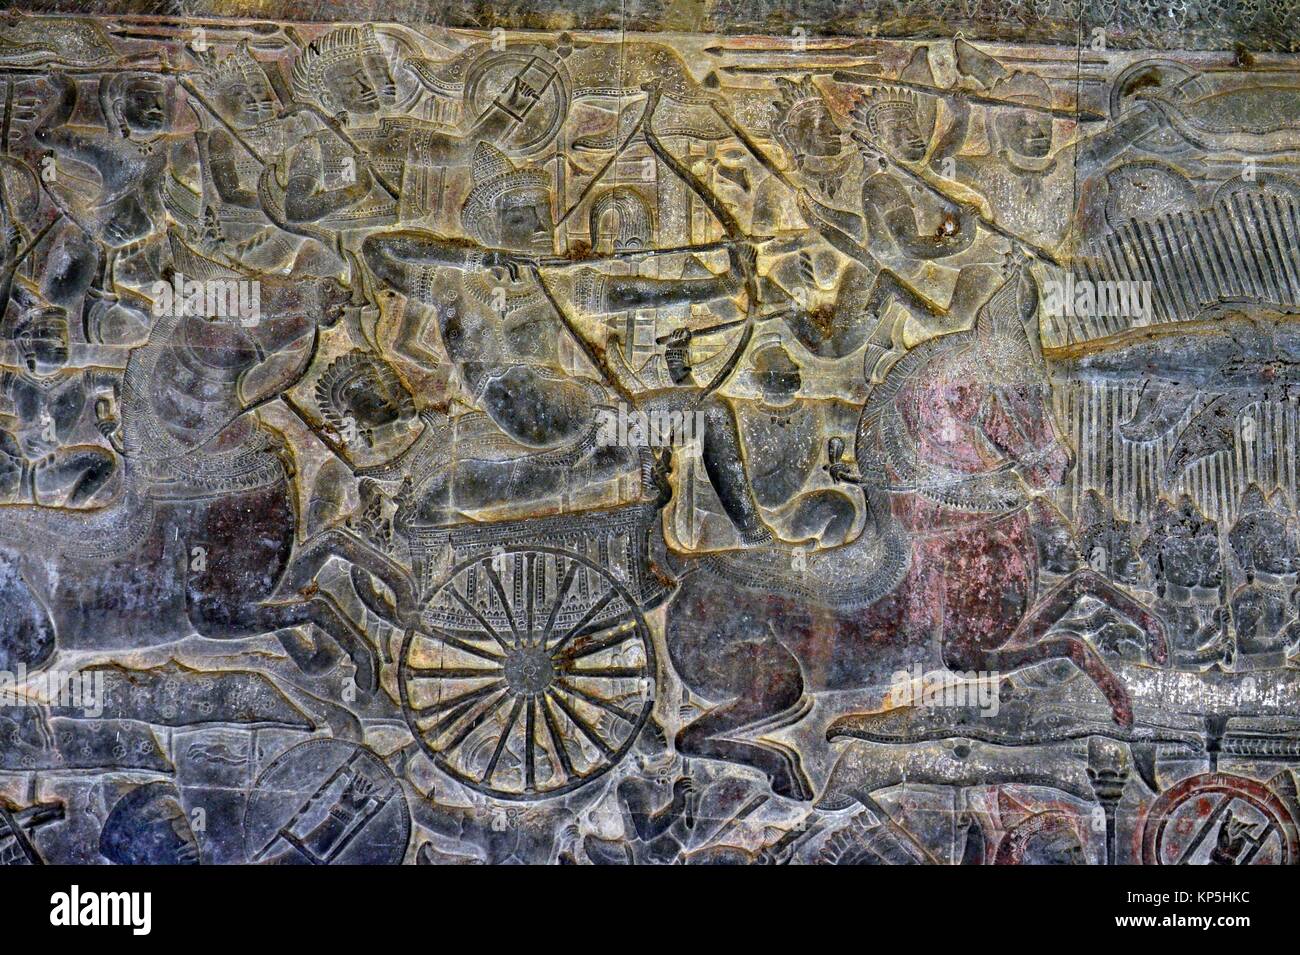 Histoire hindoue la sculpture en galerie d'Angkor Wat, Siem Reap, Cambodge, Indochine, Asie du sud-est Asie,. Banque D'Images